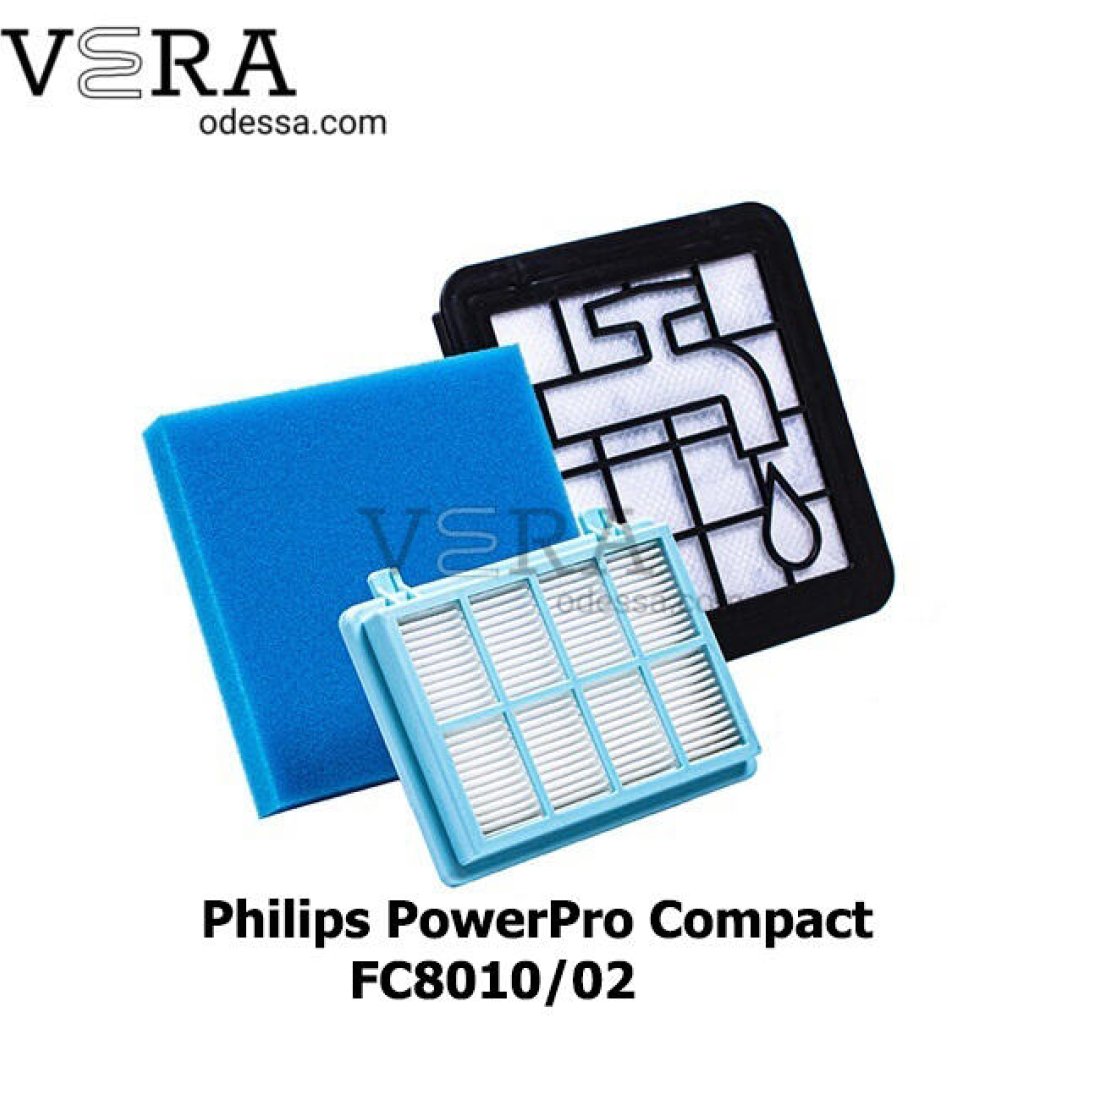 Купить фильтр для пылесоса Philips Powerpro Compact оптом, фотография 1